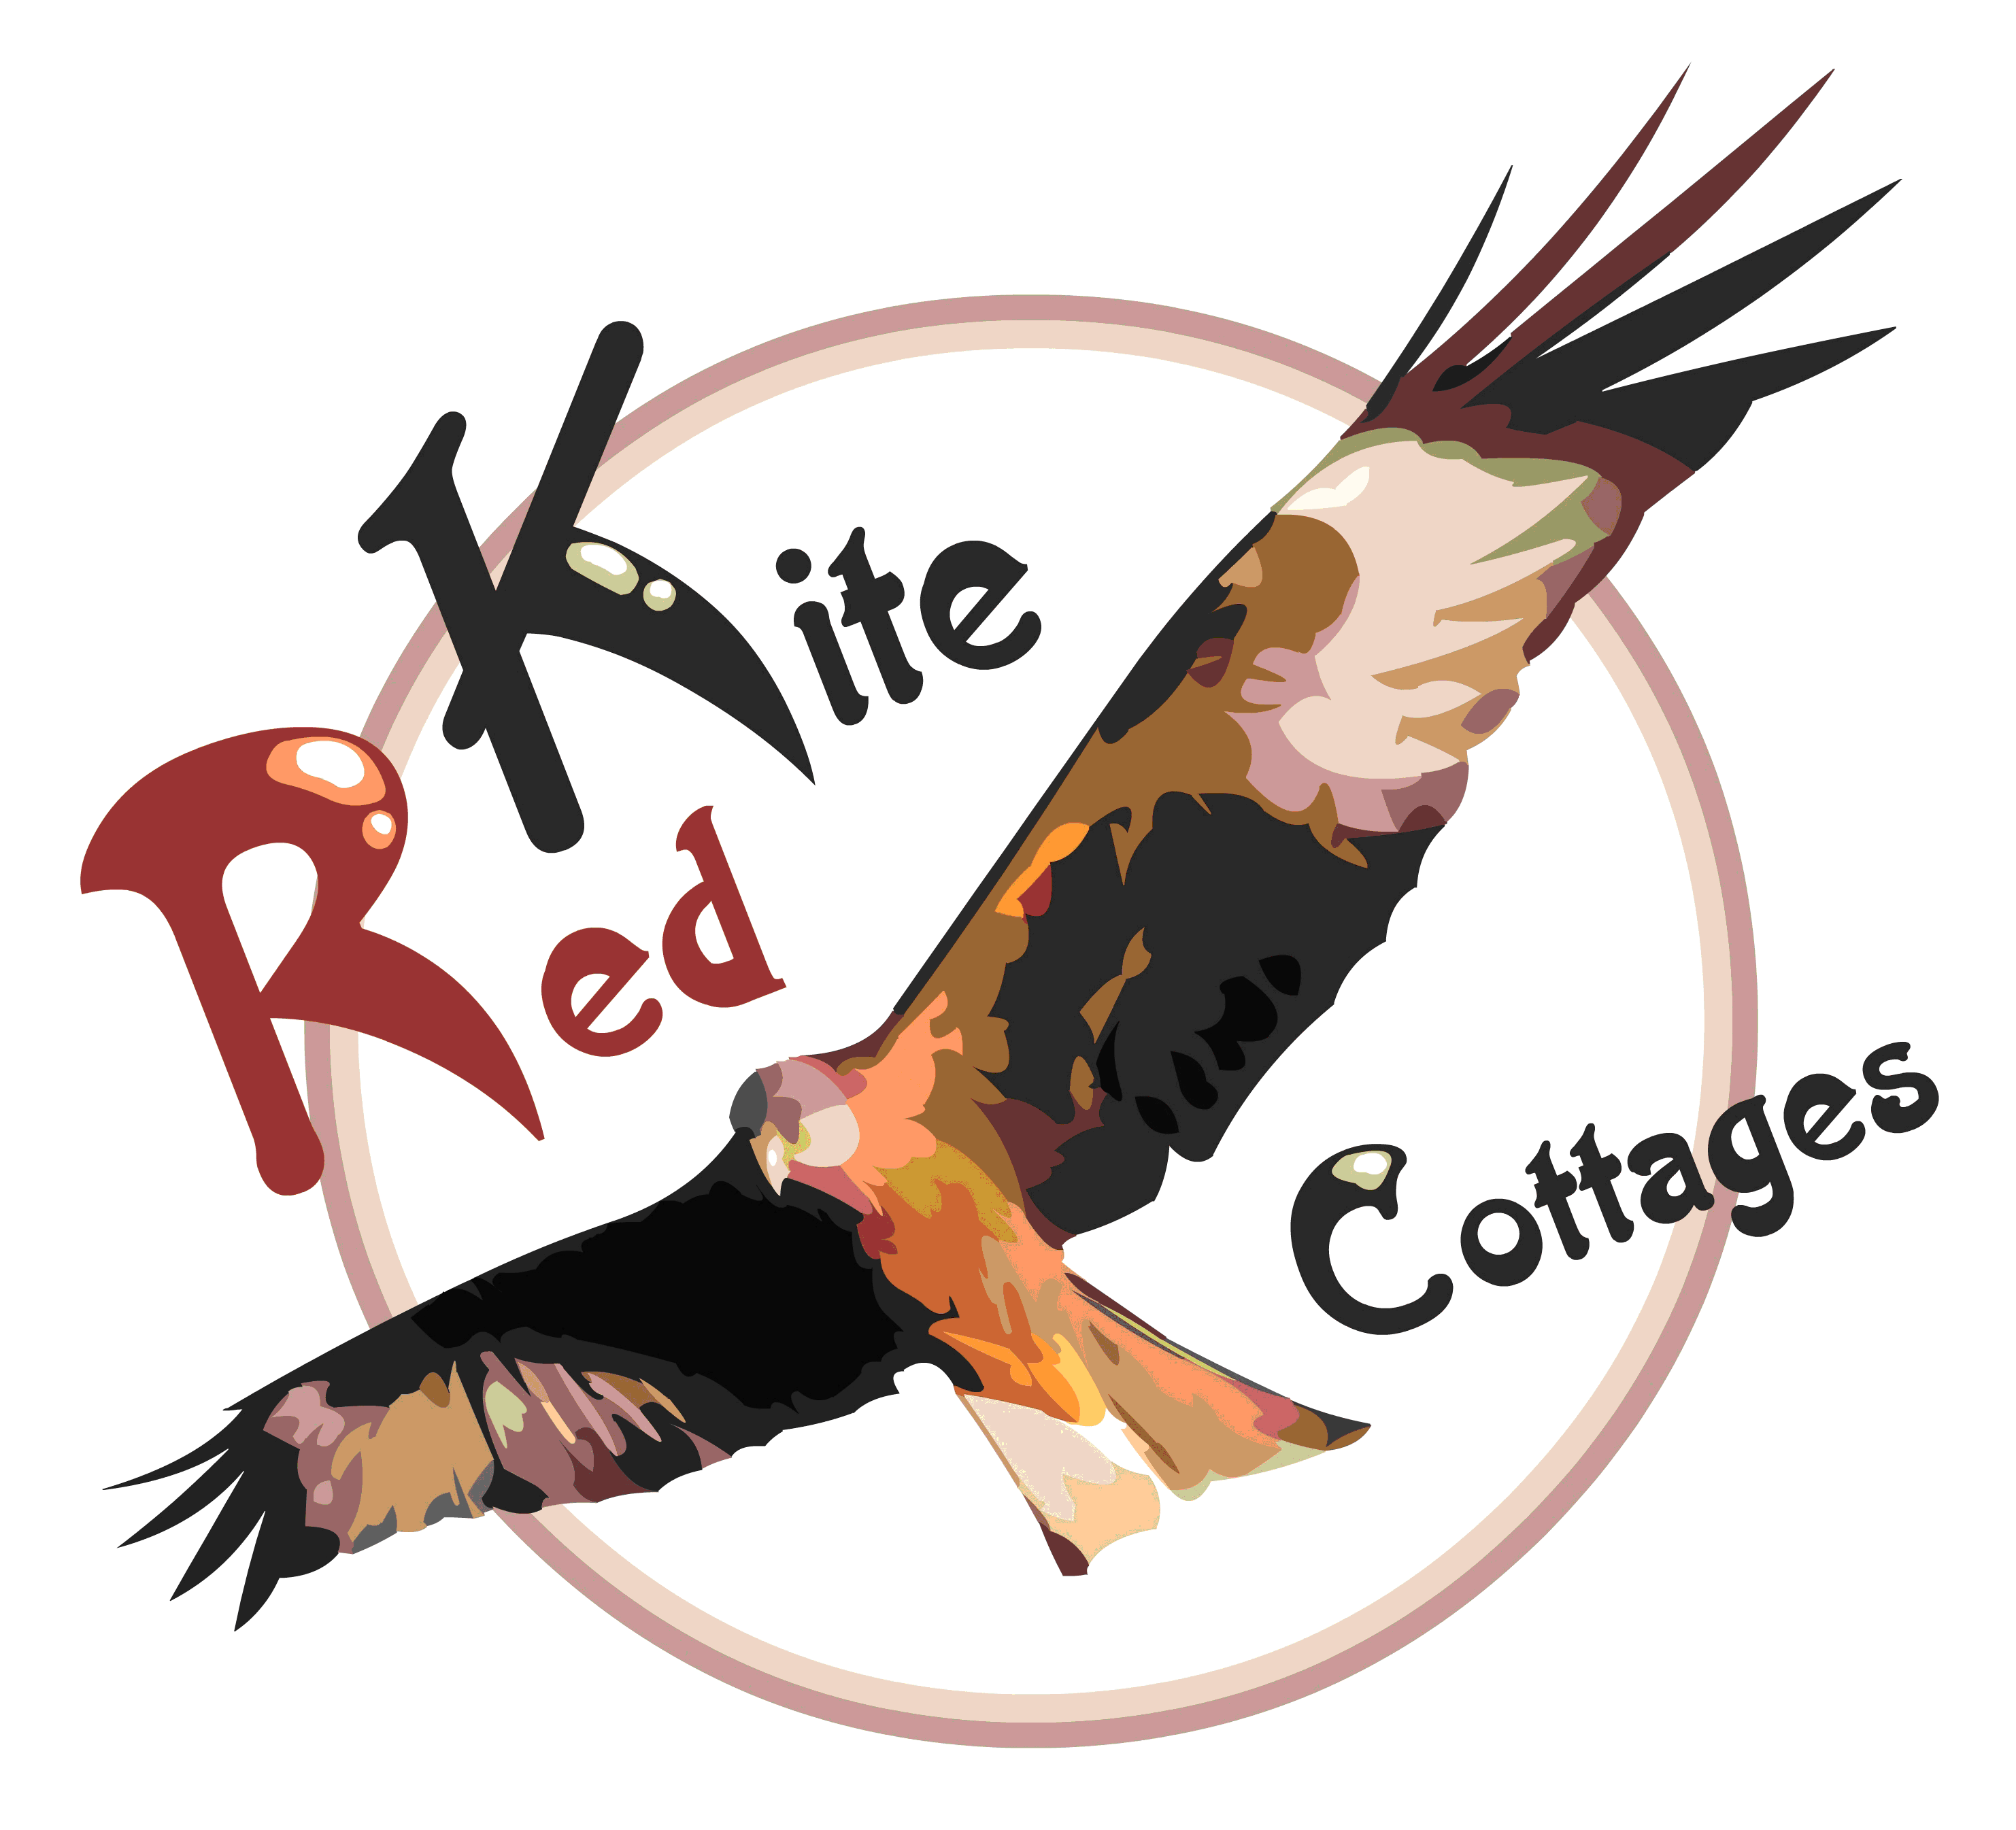 red kite drawings